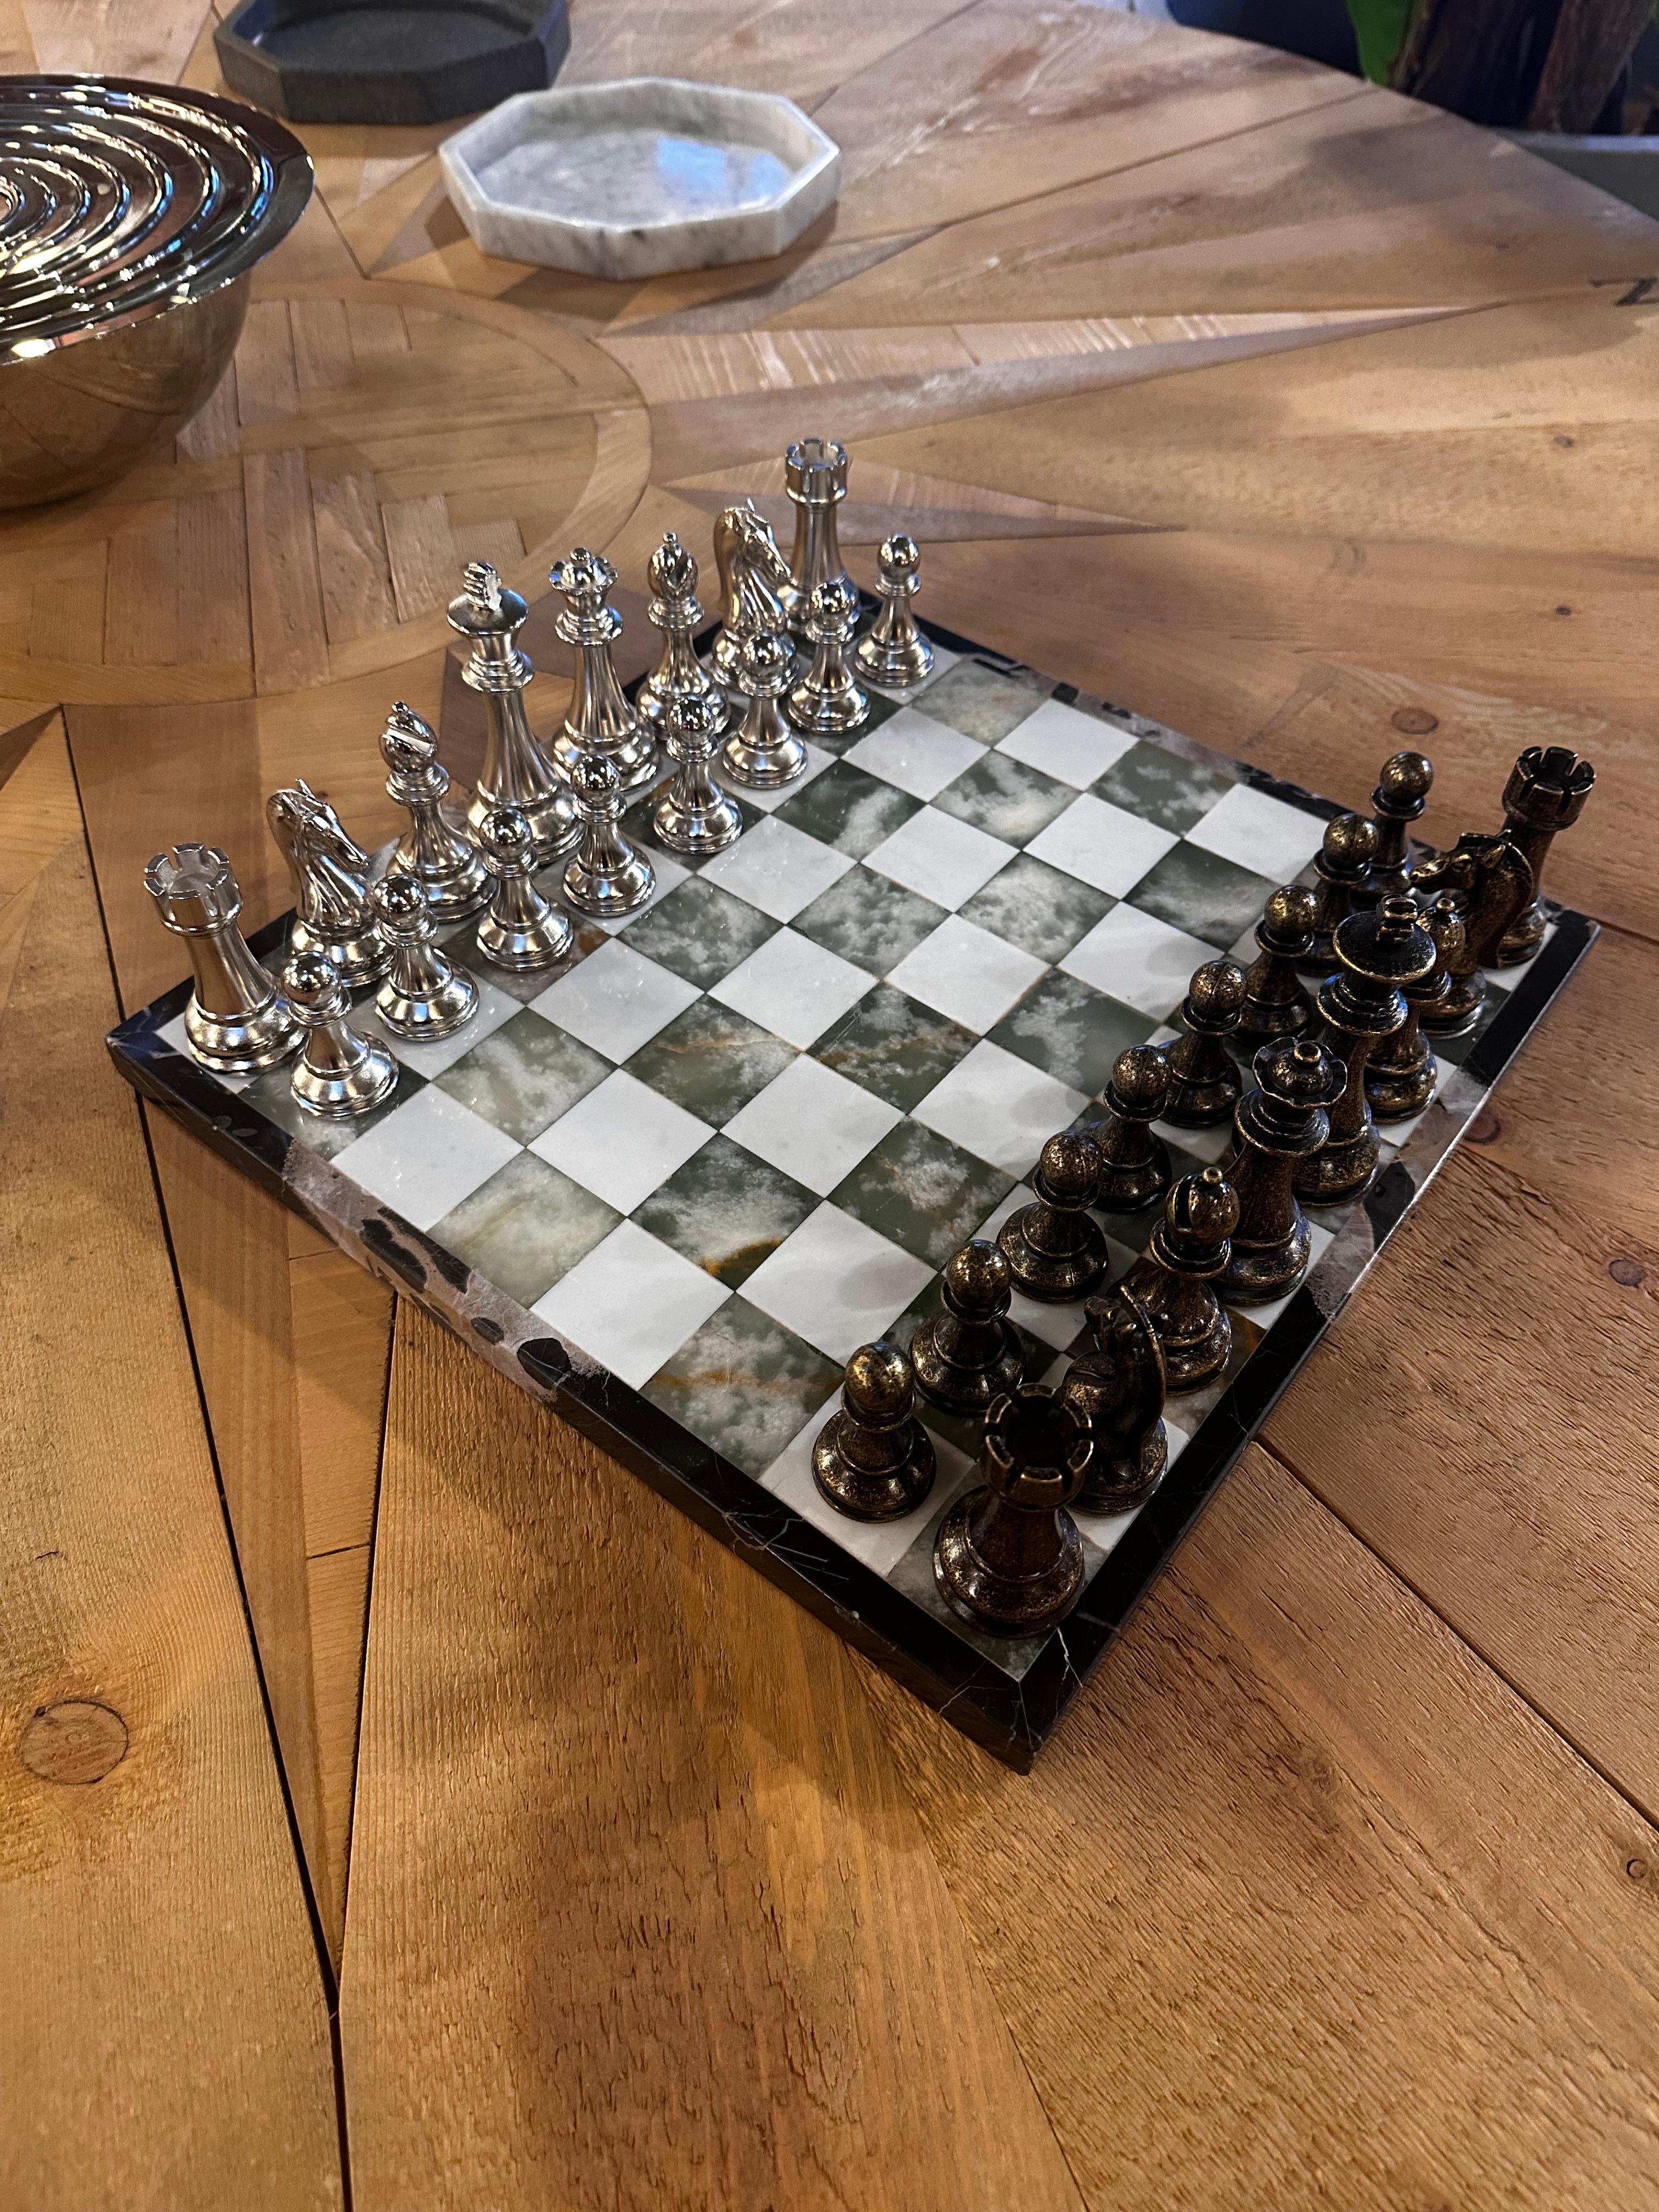 Das Vintage Italian Marble Large Chess Set aus den 1980er Jahren ist ein luxuriöses und visuell auffälliges Brettspiel. Das Schachbrett ist aus exquisitem italienischem Marmor gefertigt, der ihm eine zeitlose Eleganz verleiht. Zusammen mit den